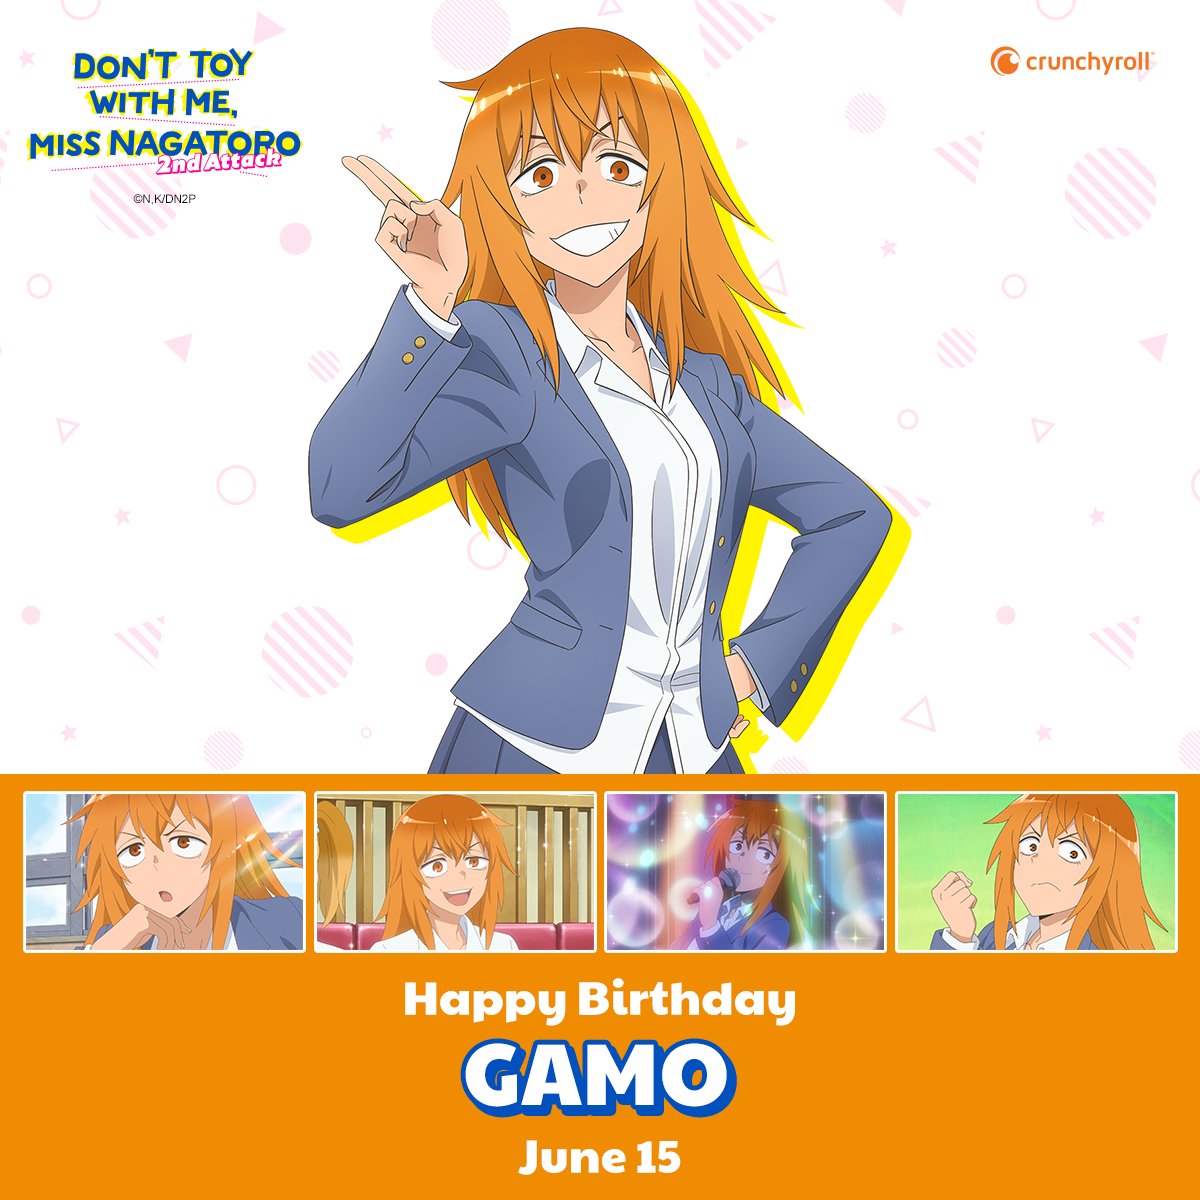 Happy birthday, Gamo! 🎉